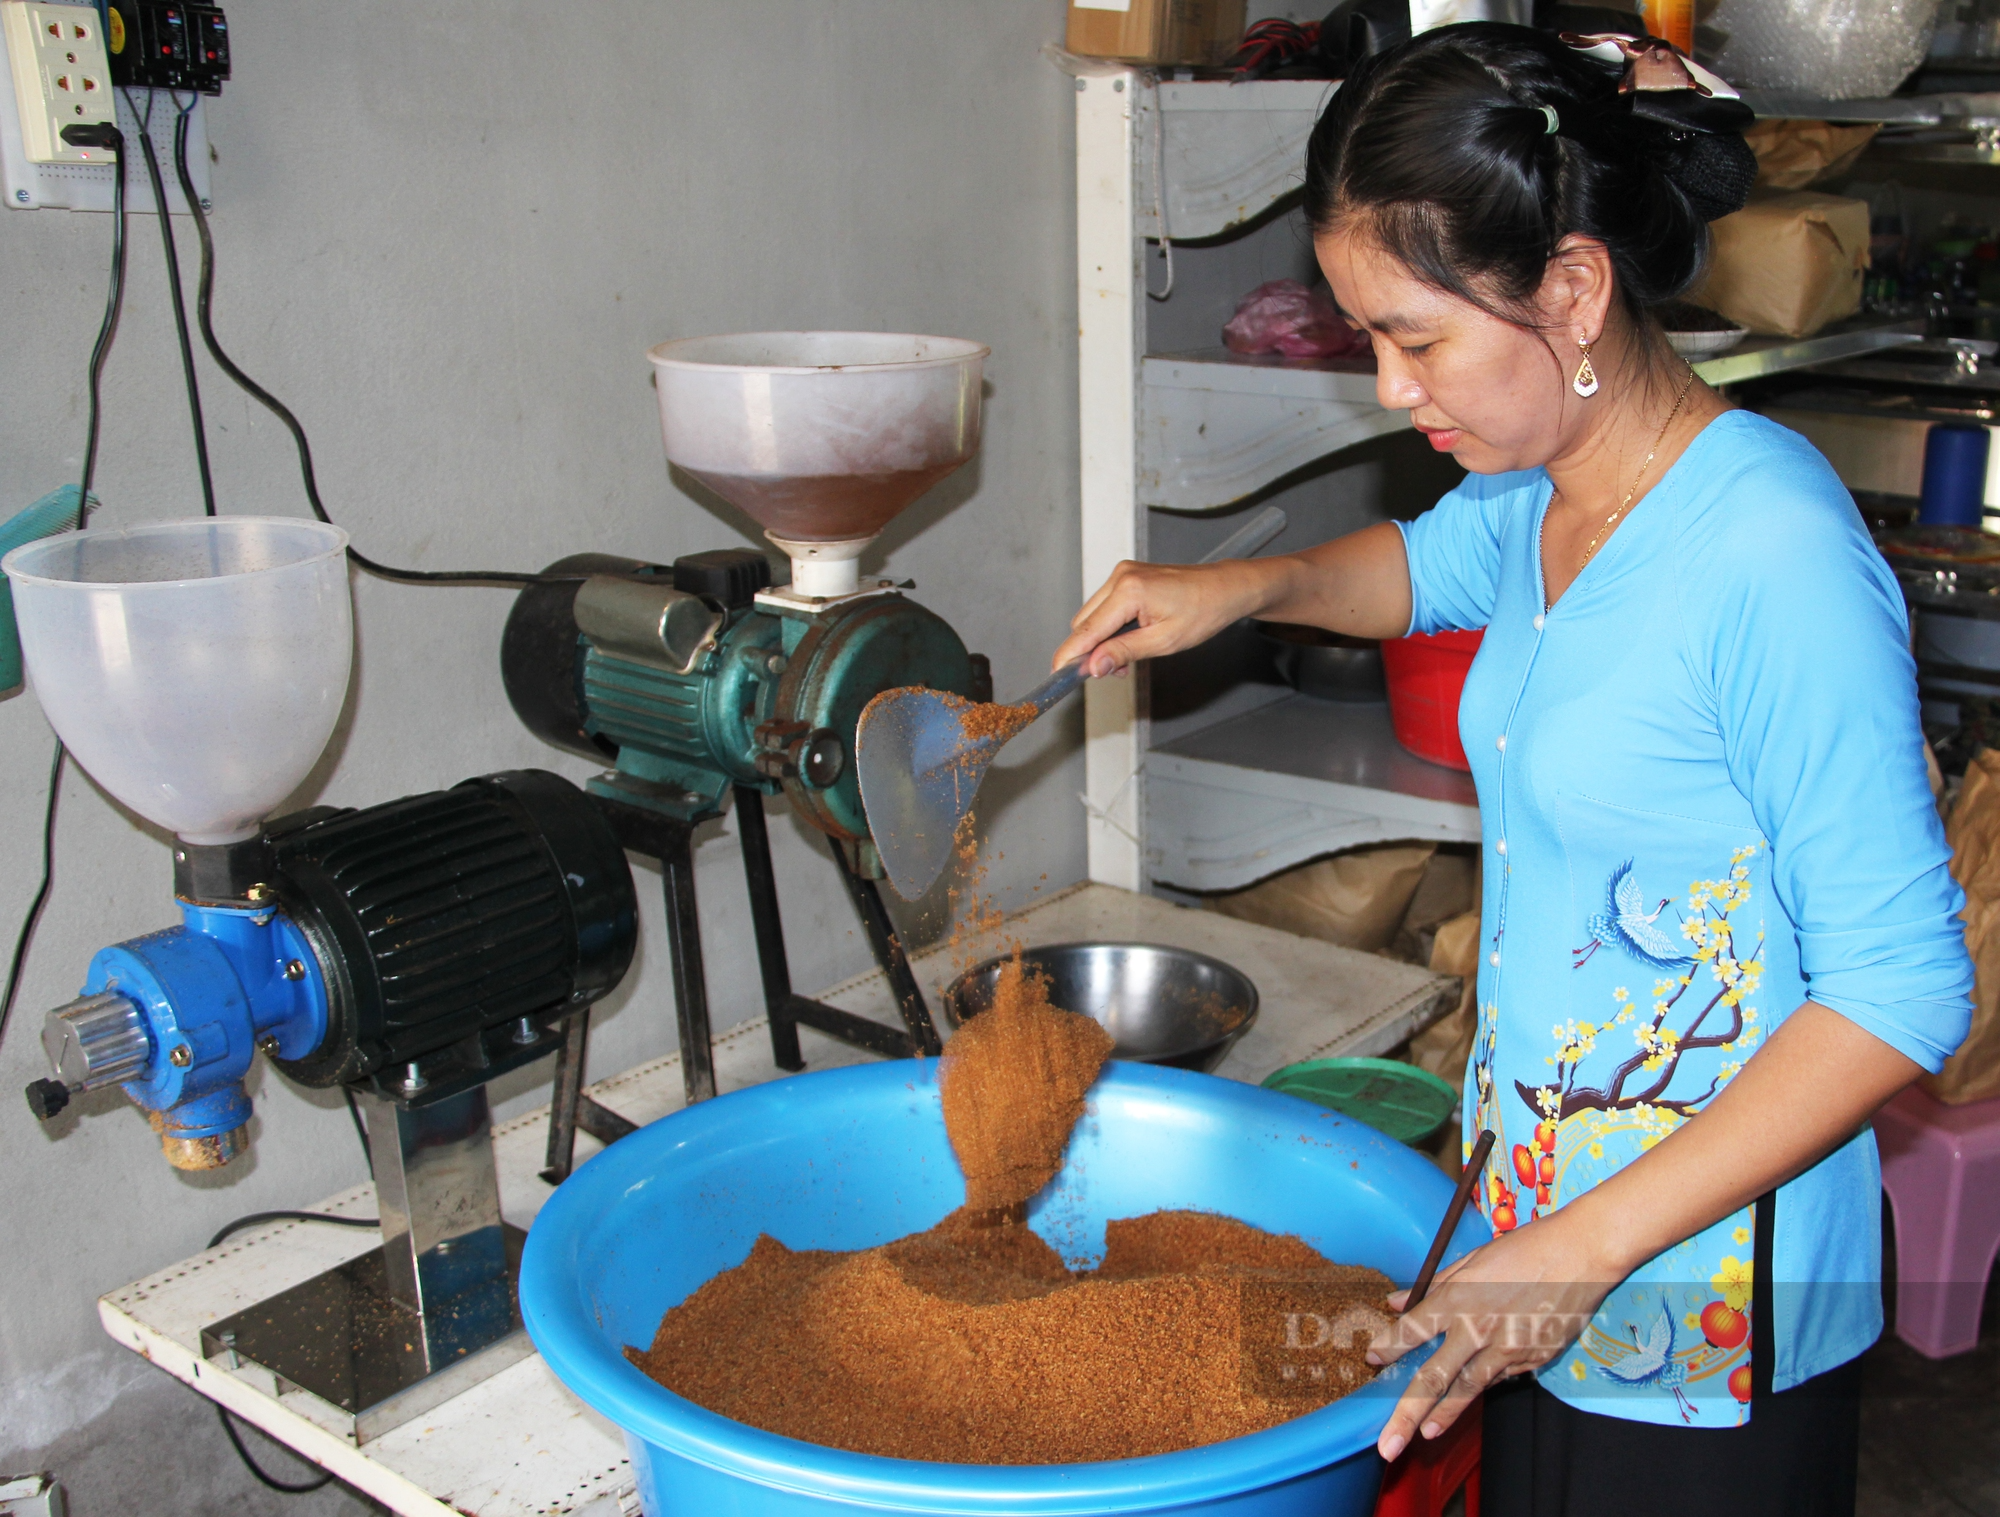 Khởi nghiệp bán cà phê dừa, cô gái ở Hậu Giang kiếm 50 triệu đồng/tháng - Ảnh 1.